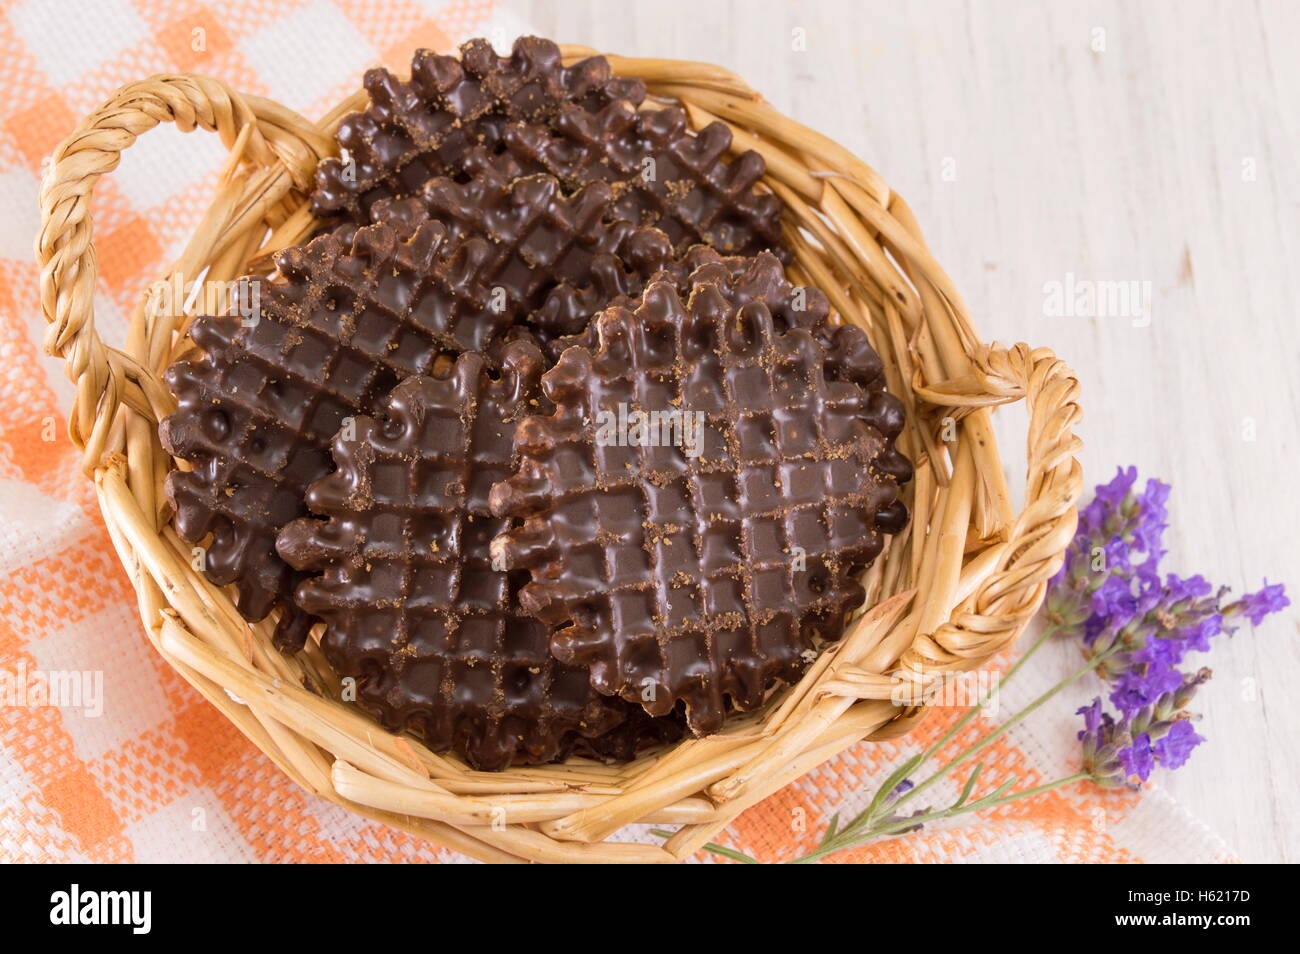 Ricoperta di cioccolato round biscotti fatti in casa nel cesto in legno Foto Stock